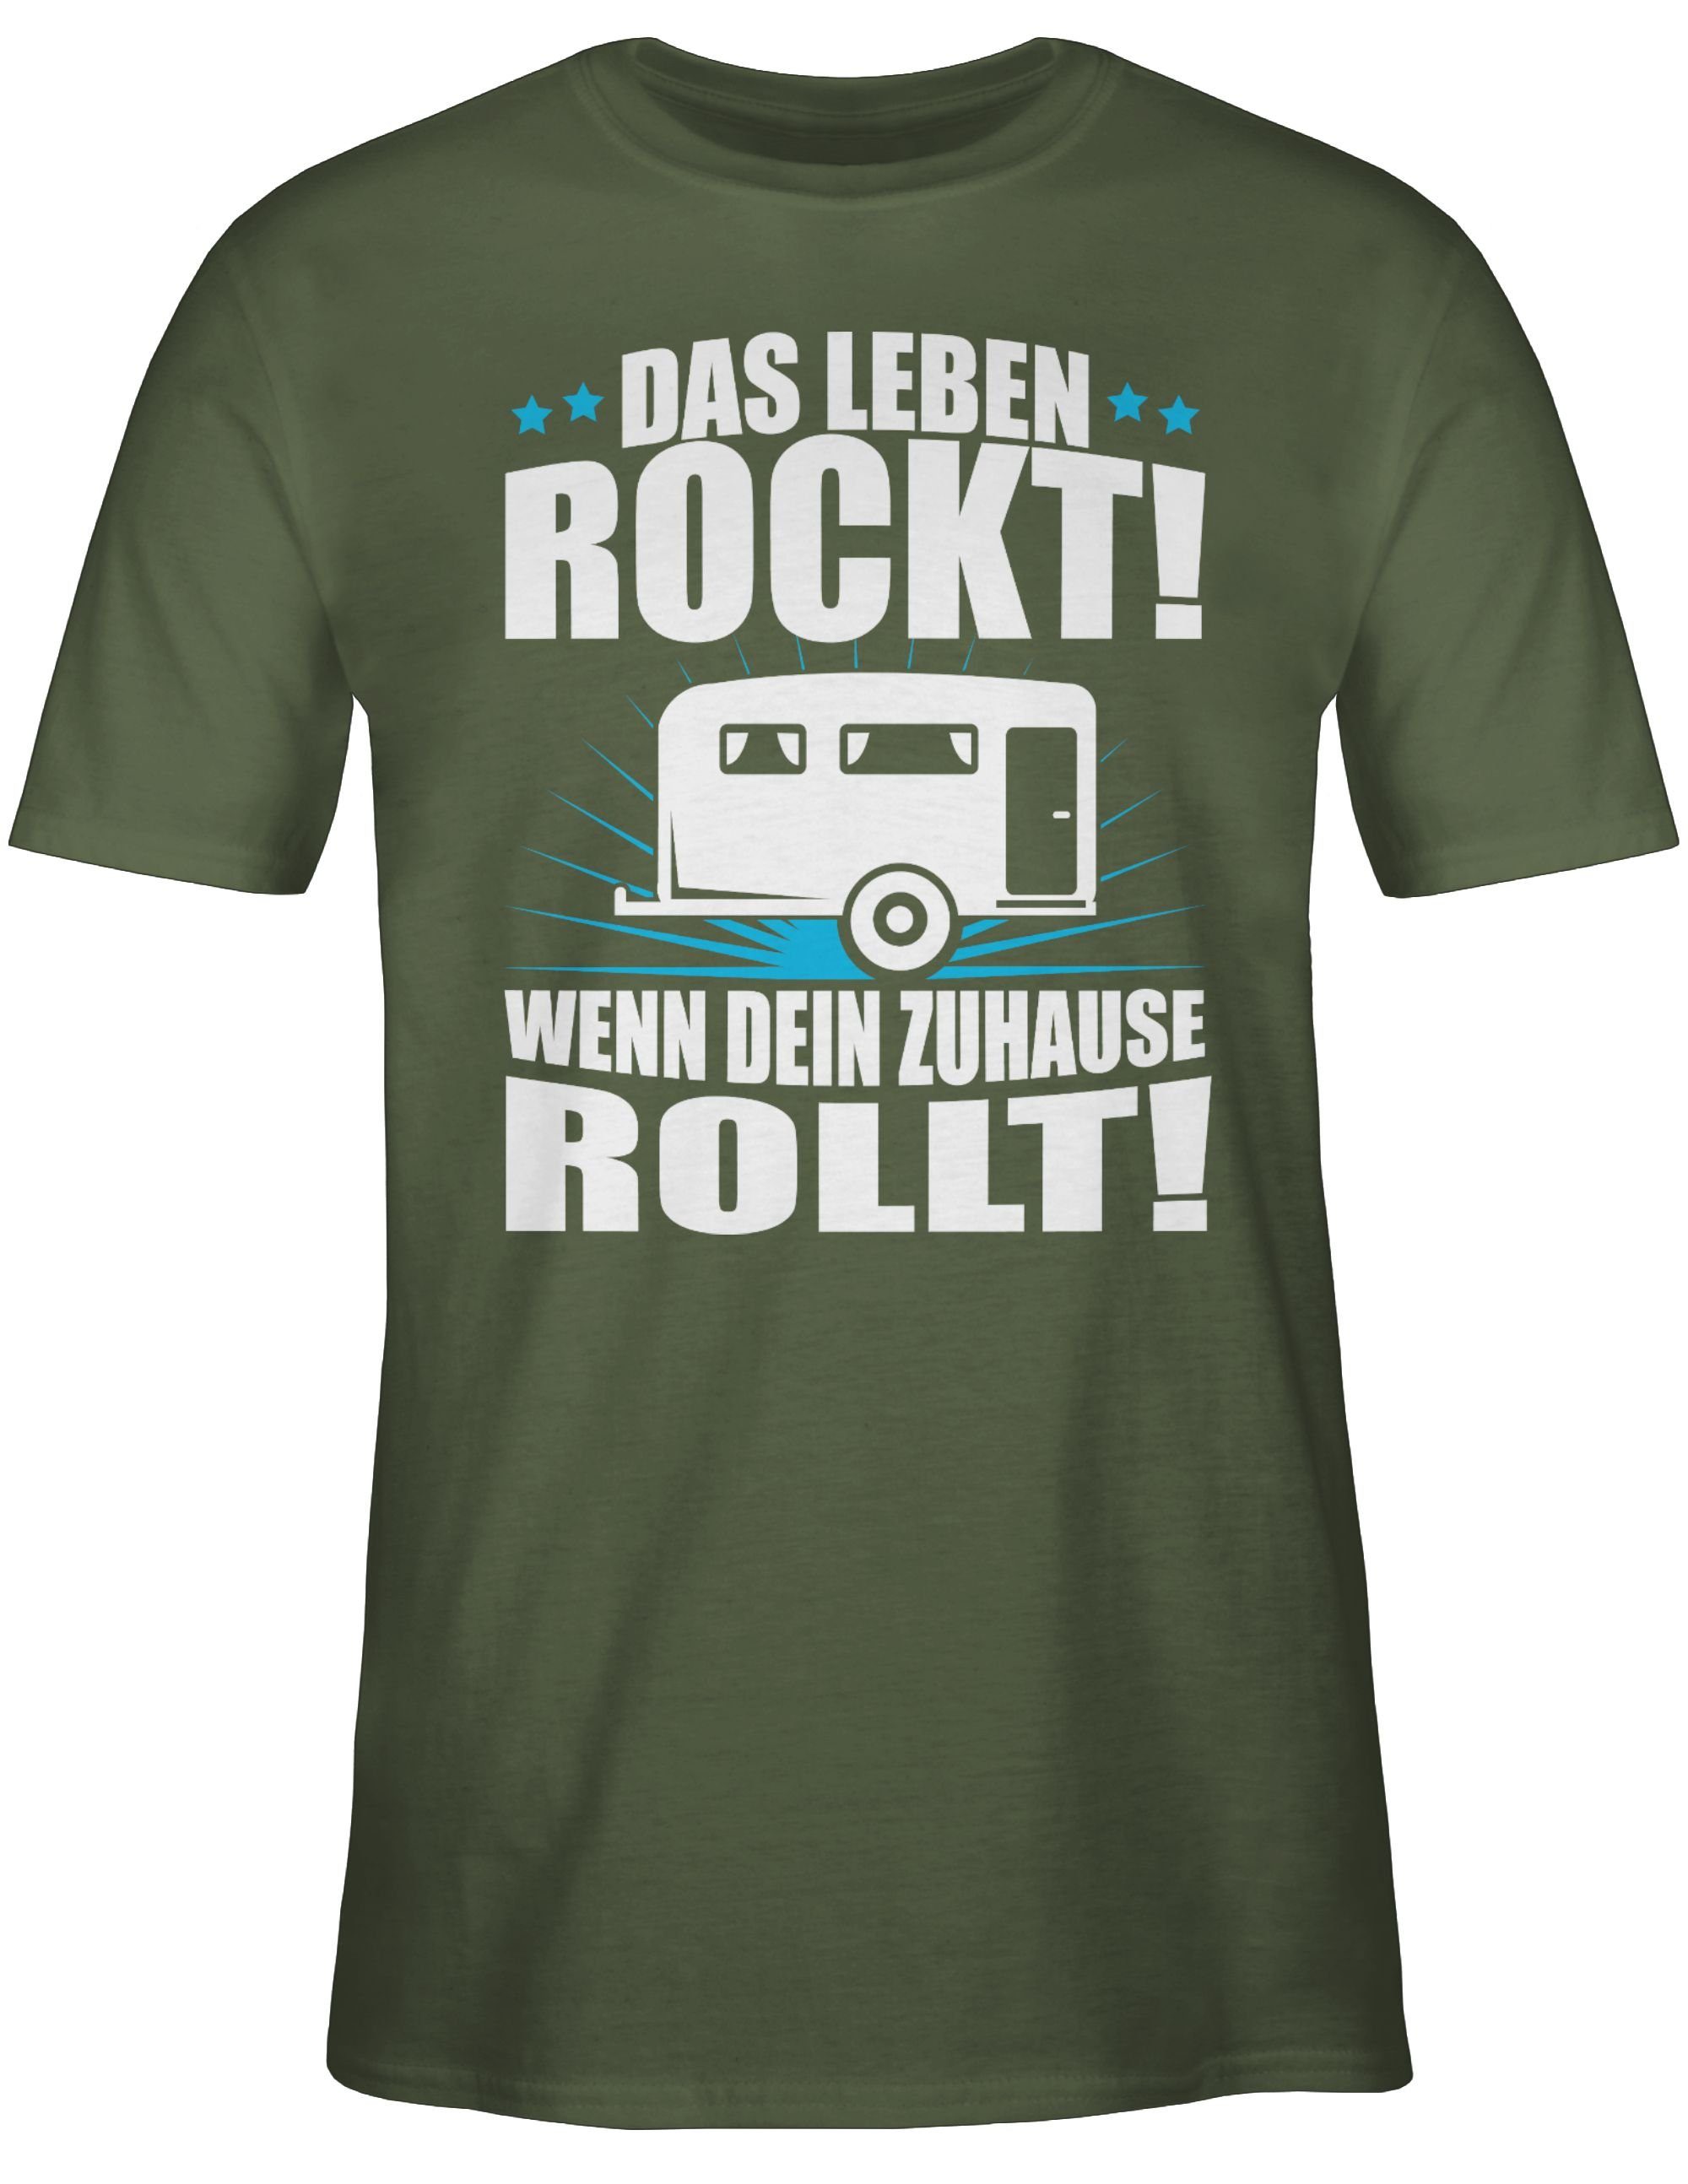 Grün Shirtracer rockt! Das Leben T-Shirt weiß Wohnwagen Army Outfit Hobby 3